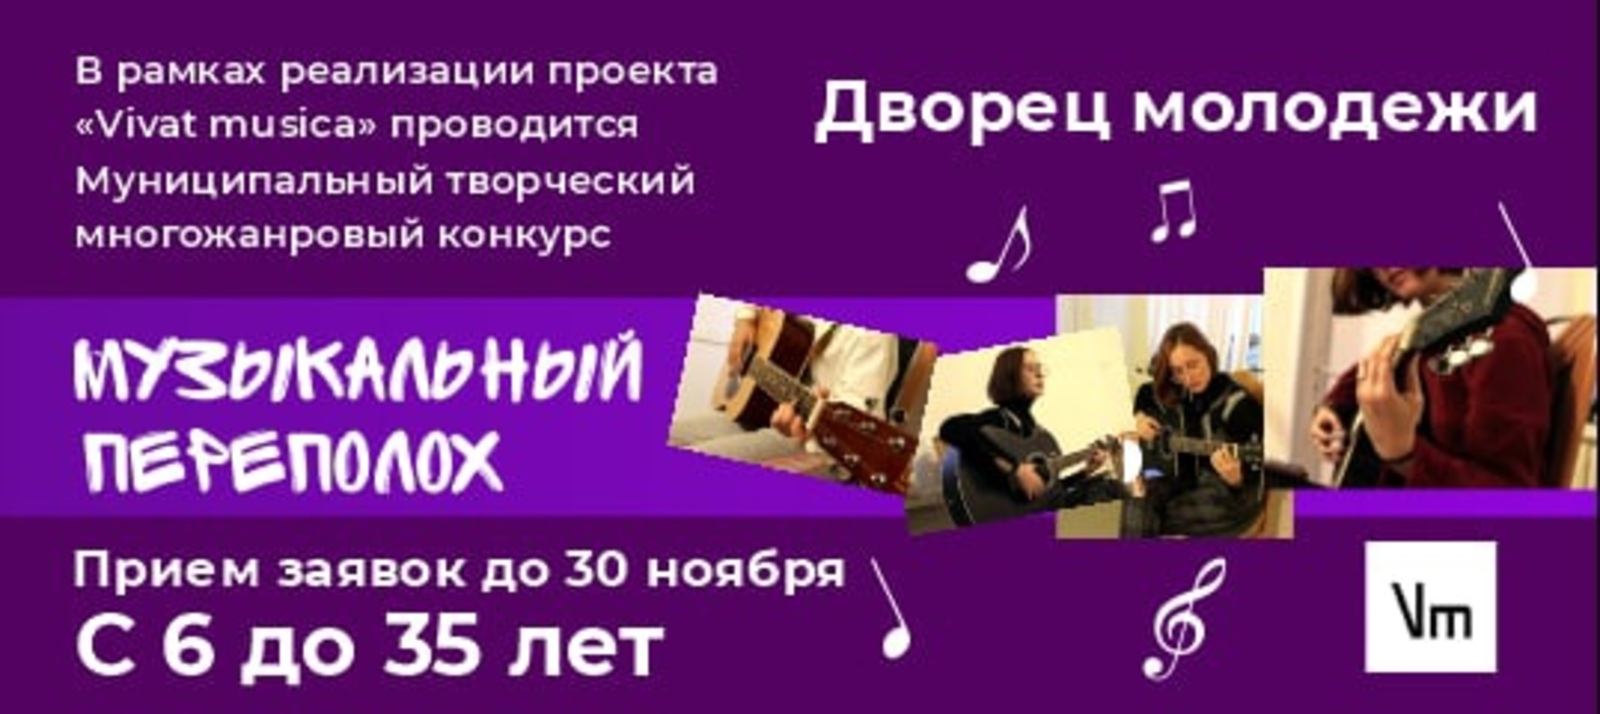 Ишимбайцев приглашают к участию в «Музыкальном переполохе»